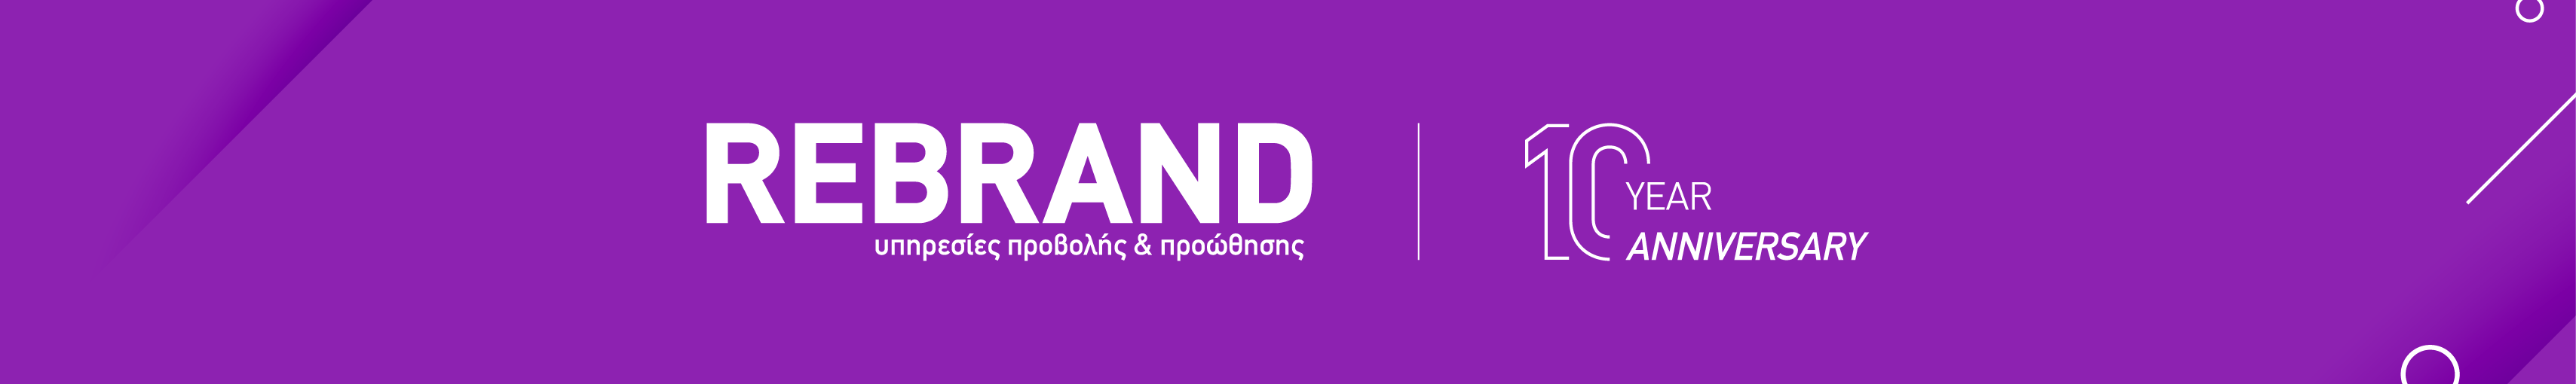 Banner profilu uživatele REBRAND - υπηρεσίες προβολής & προώθησης